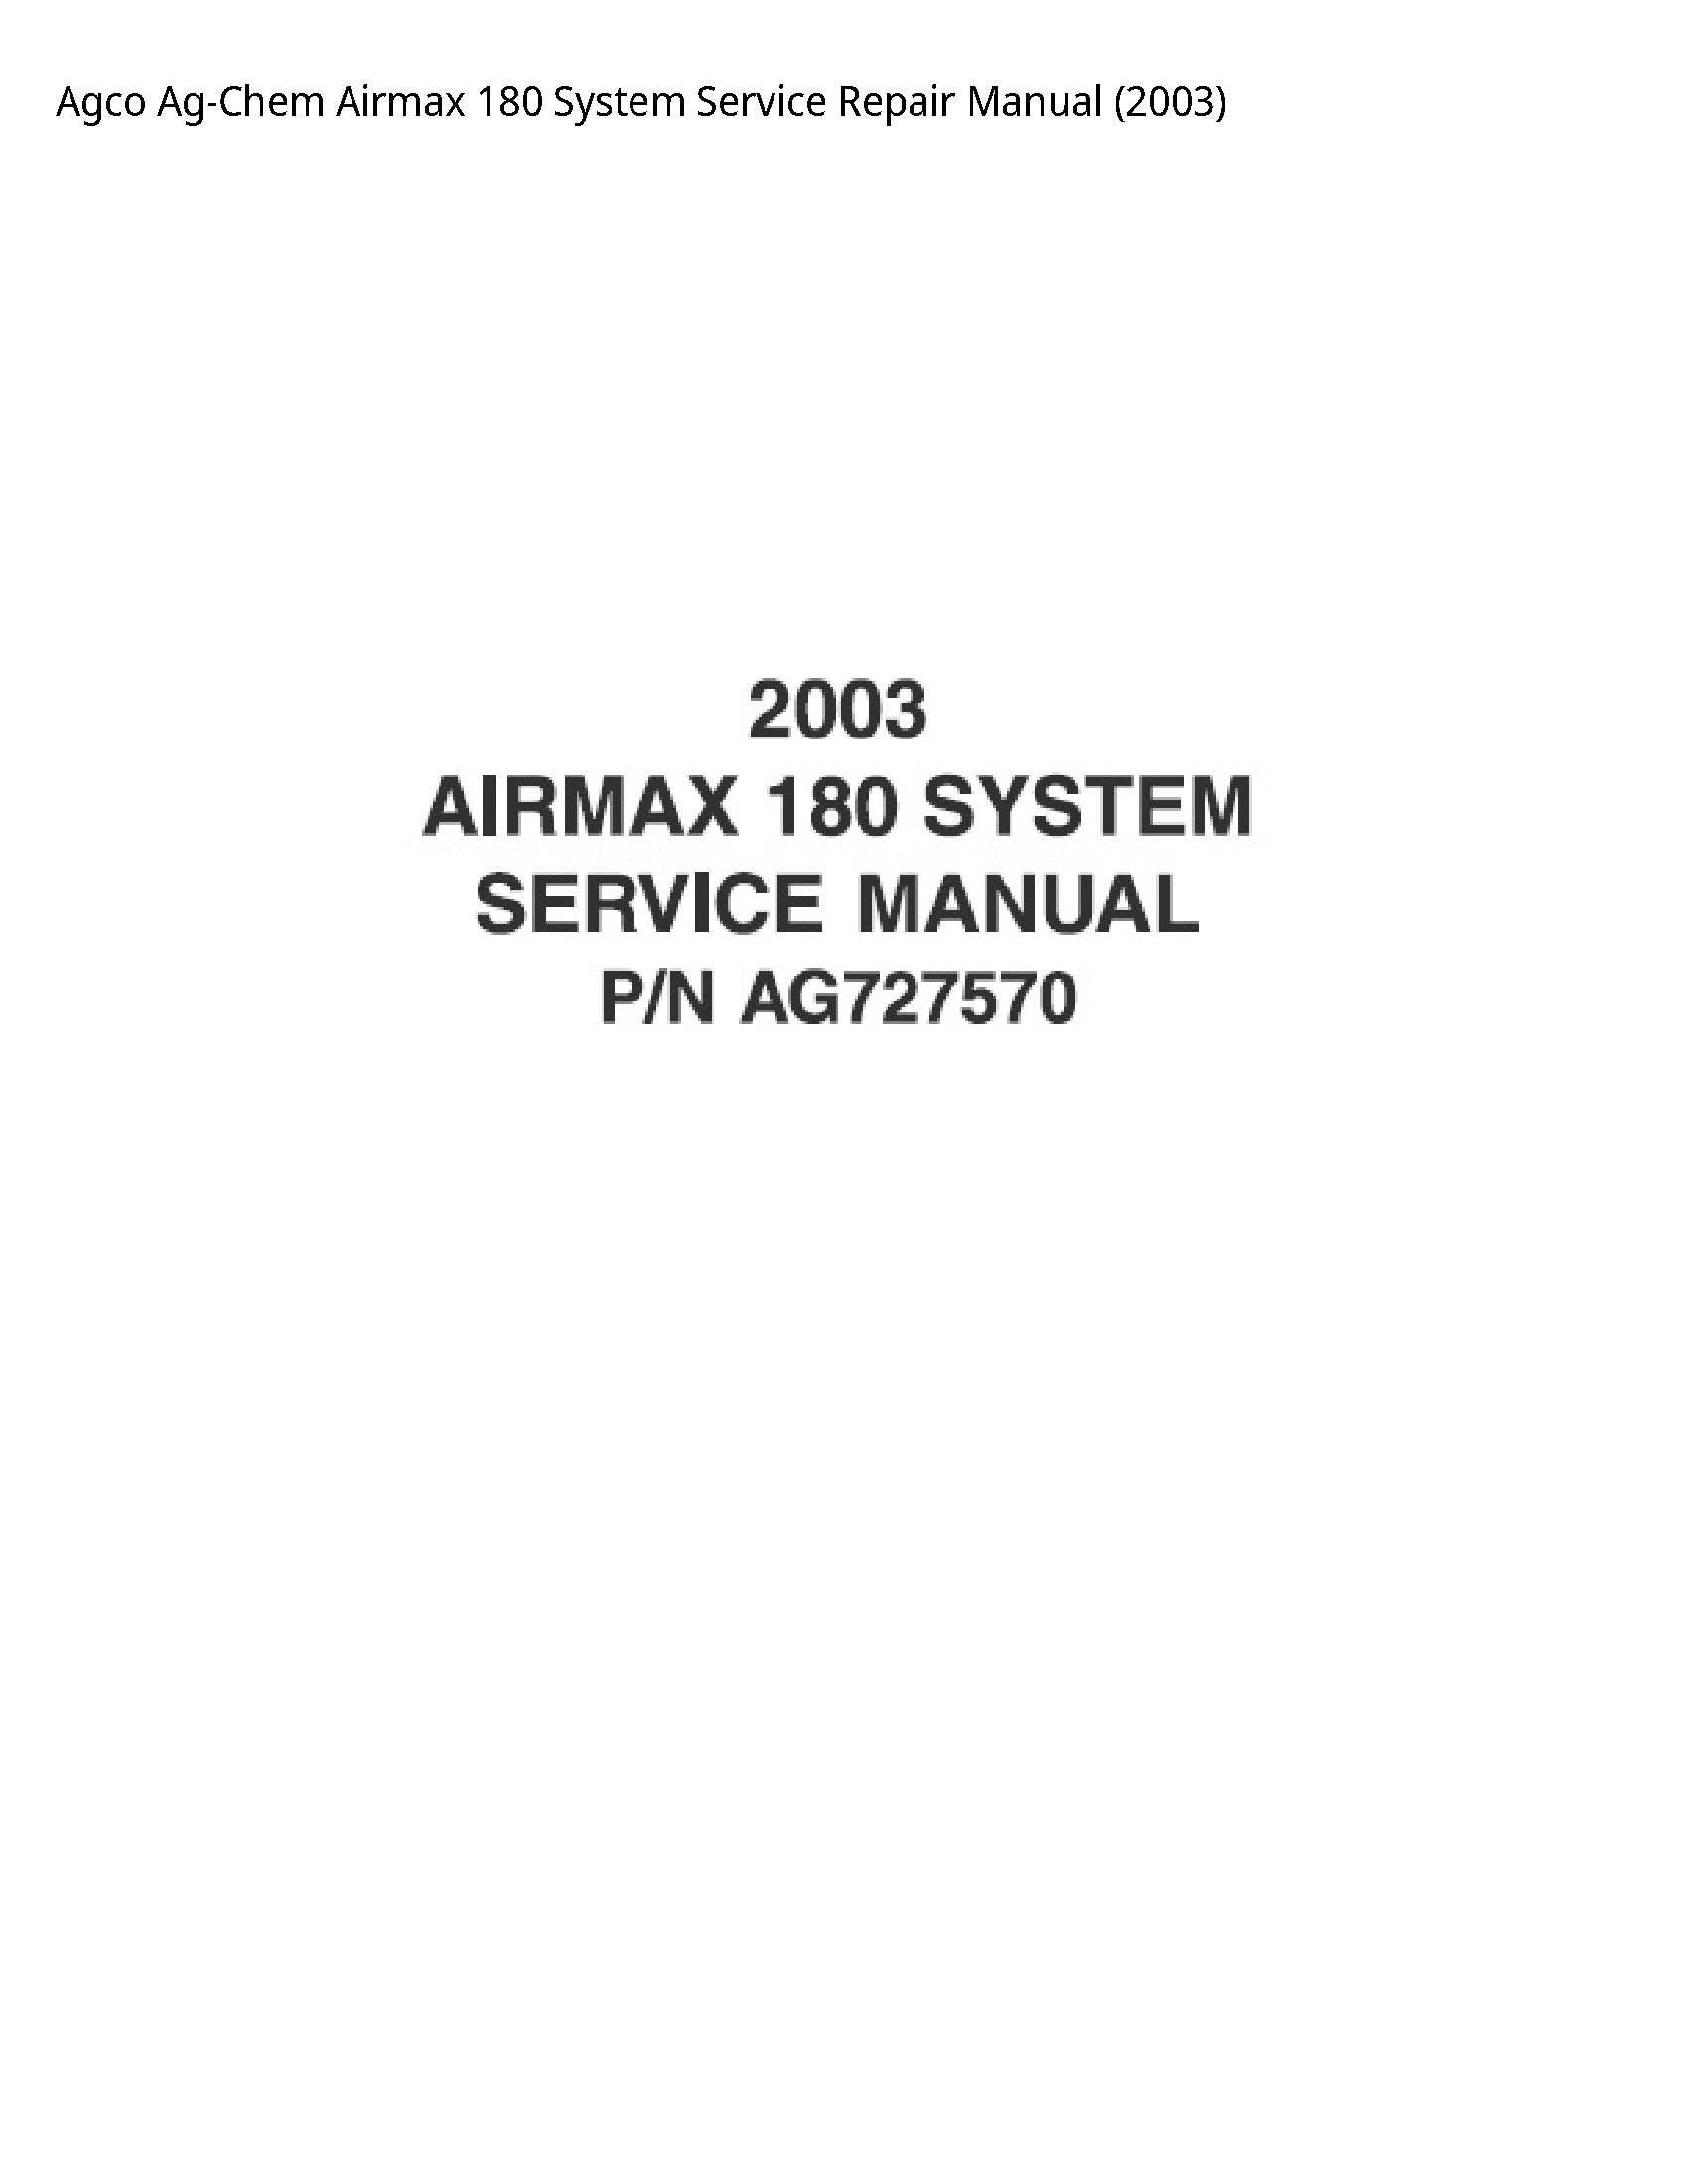 AGCO 180 Ag-Chem Airmax System manual